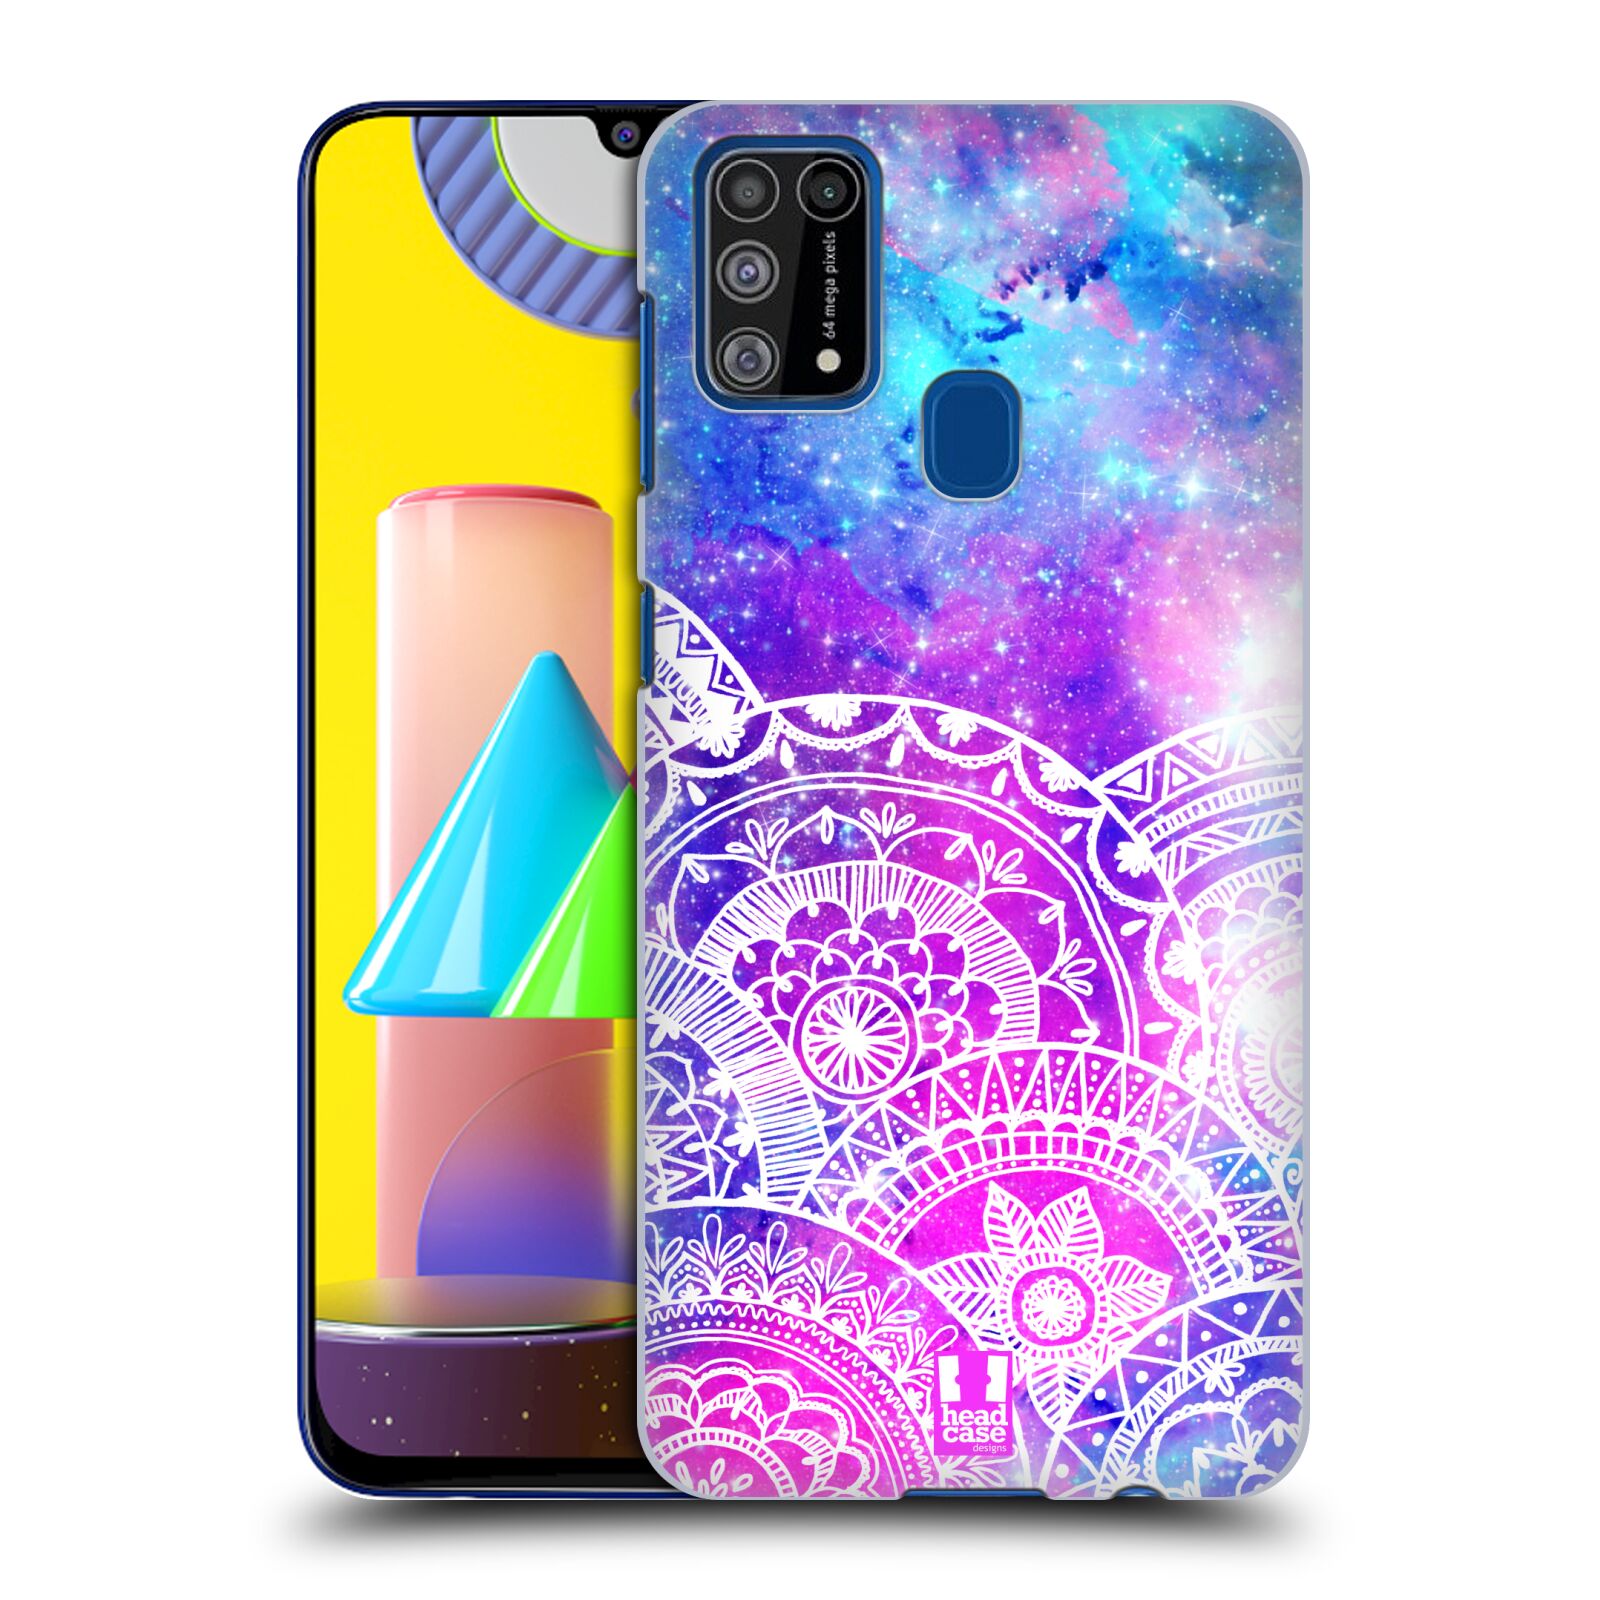 Pouzdro na mobil Samsung Galaxy M31 - HEAD CASE - Mandala nekonečná galaxie